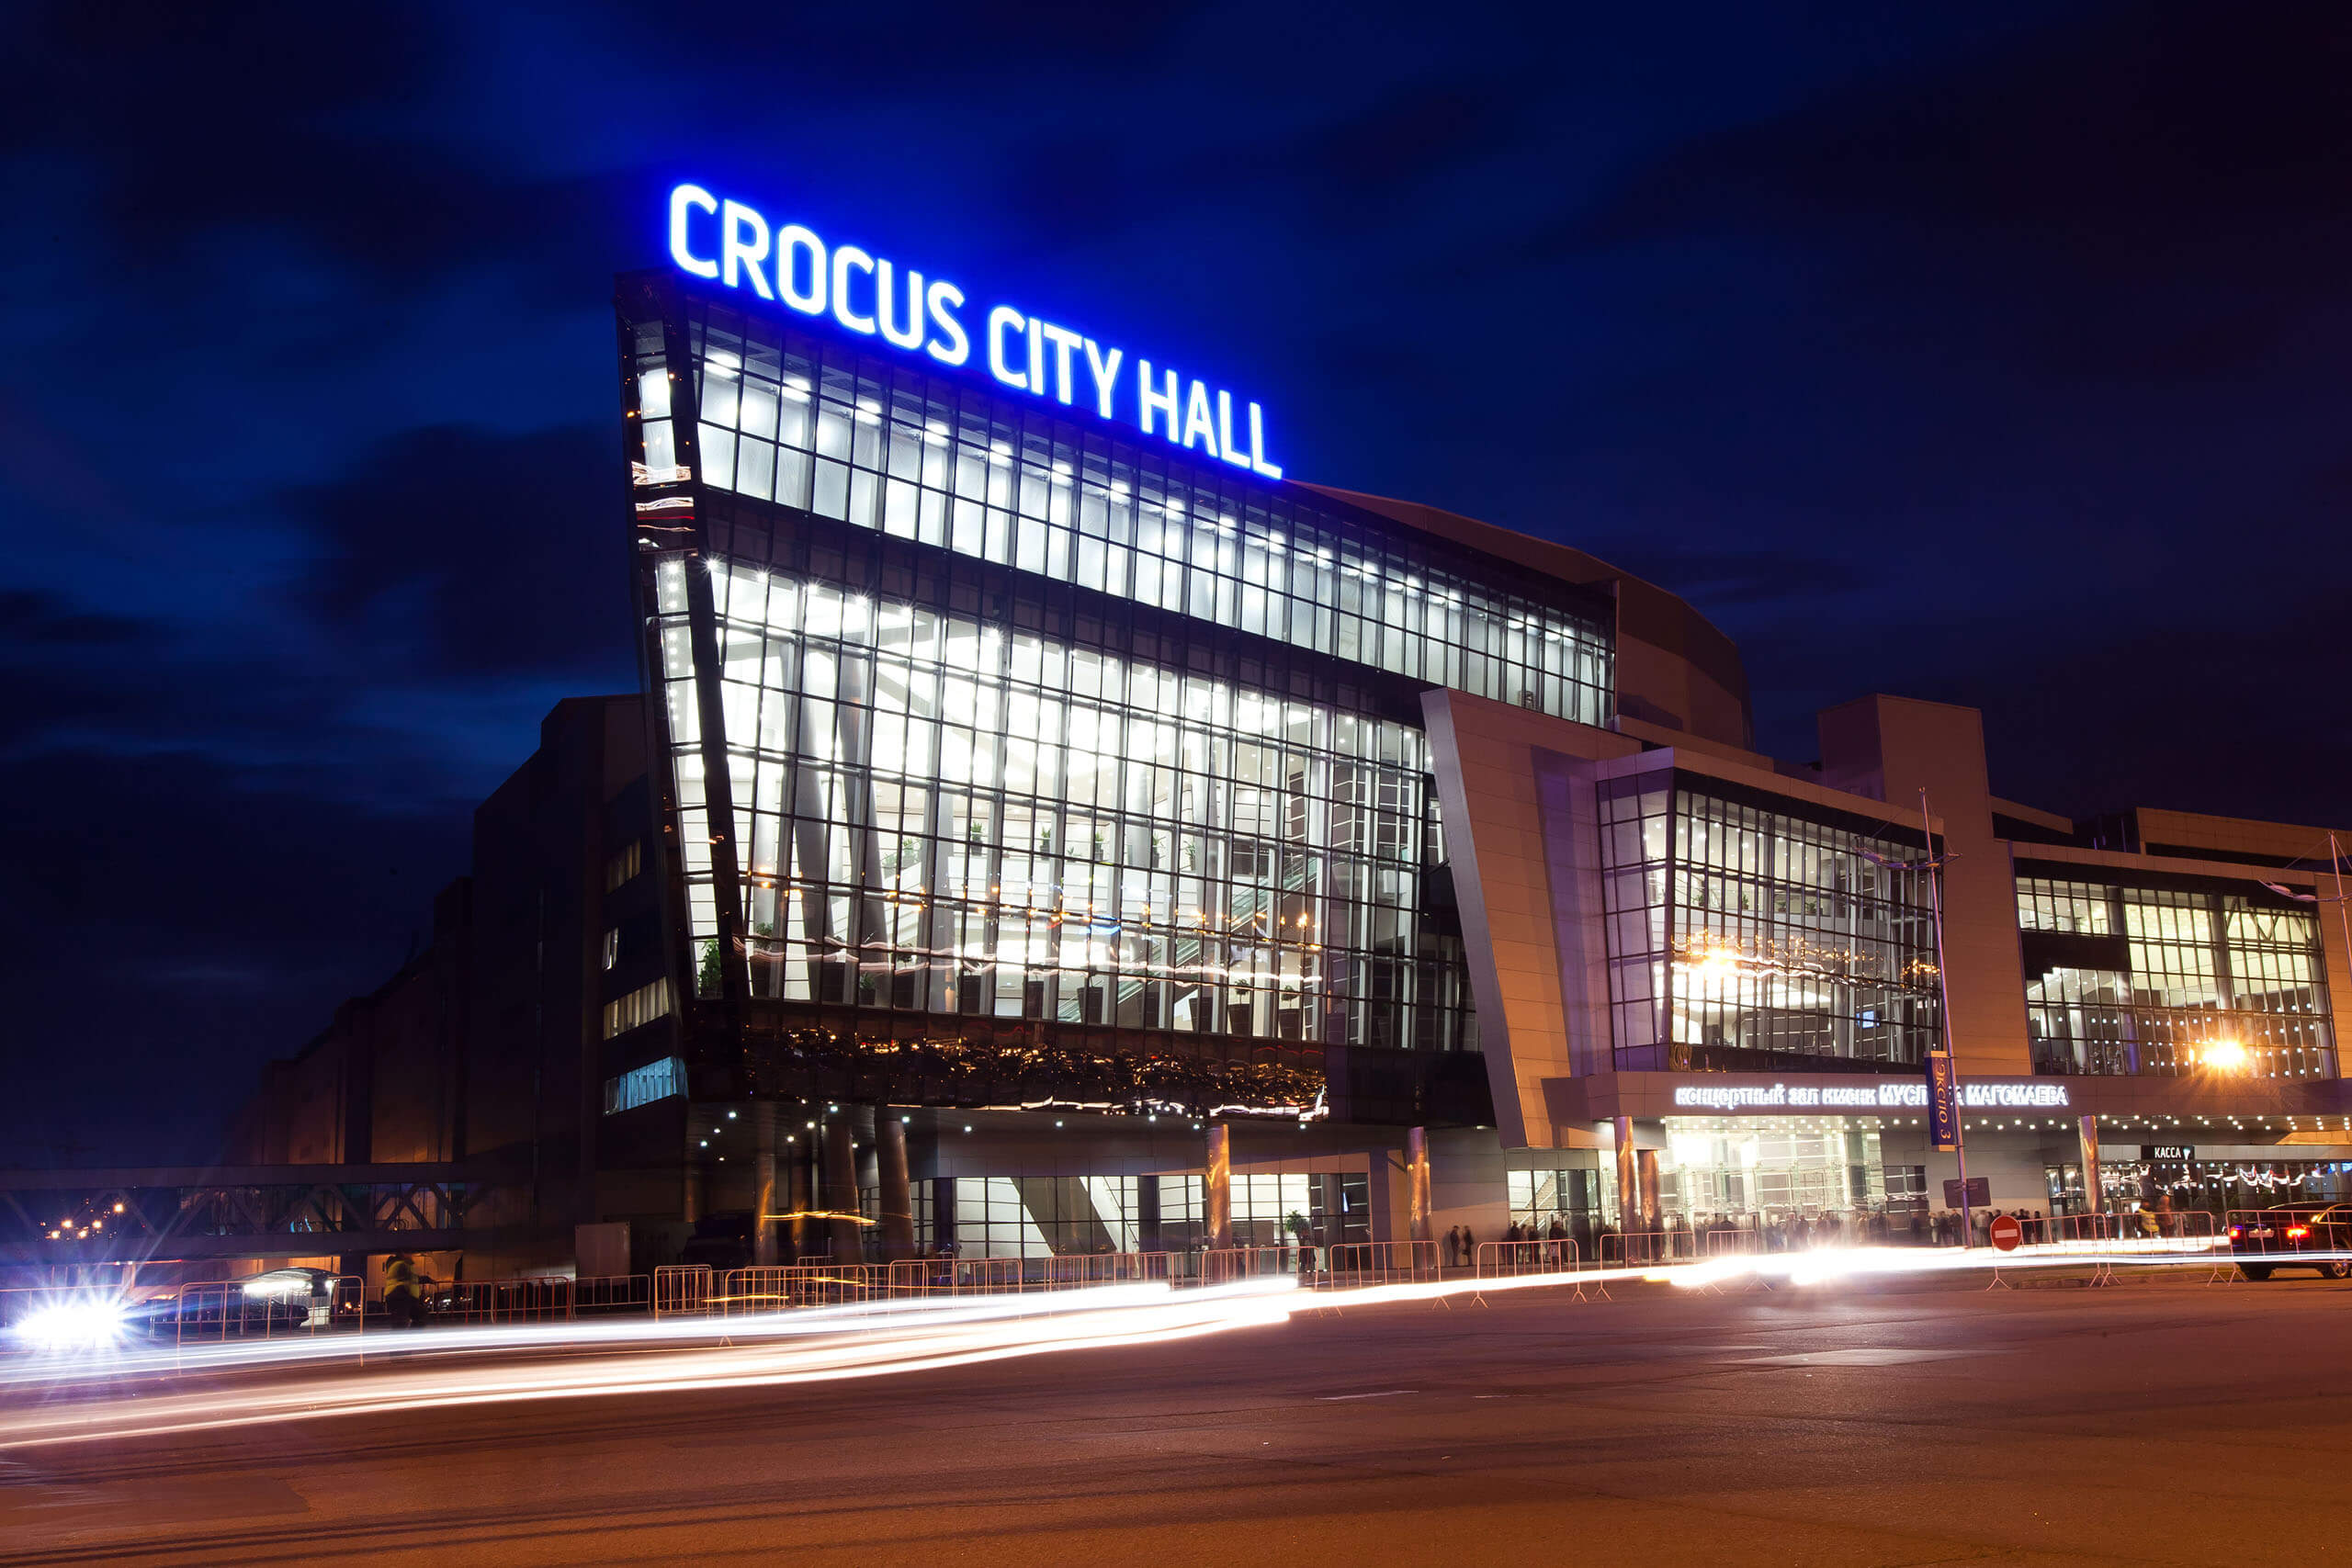 Crocus City Hall-ում ահաբեկչություն կազմակերպելու համար մեղադրվողները նշել են իրենց համակարգողի անունը